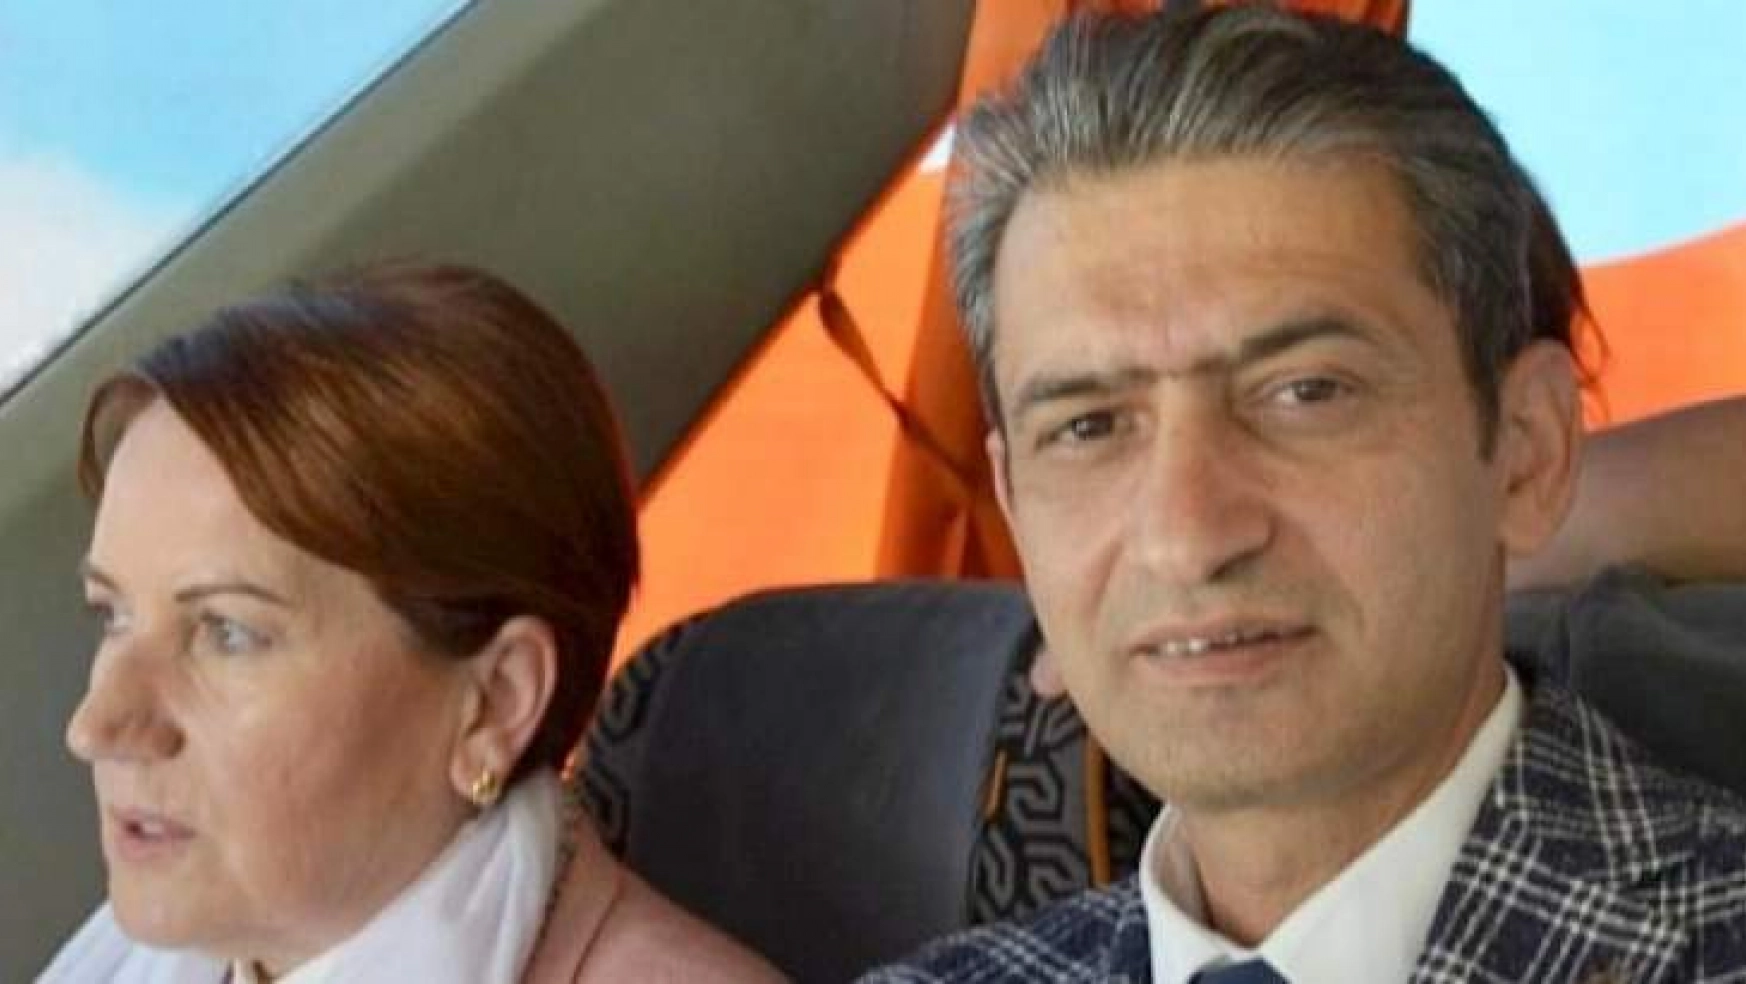 İYİ Parti Malatya İl Başkanı Özdal'a saldırı iddiası